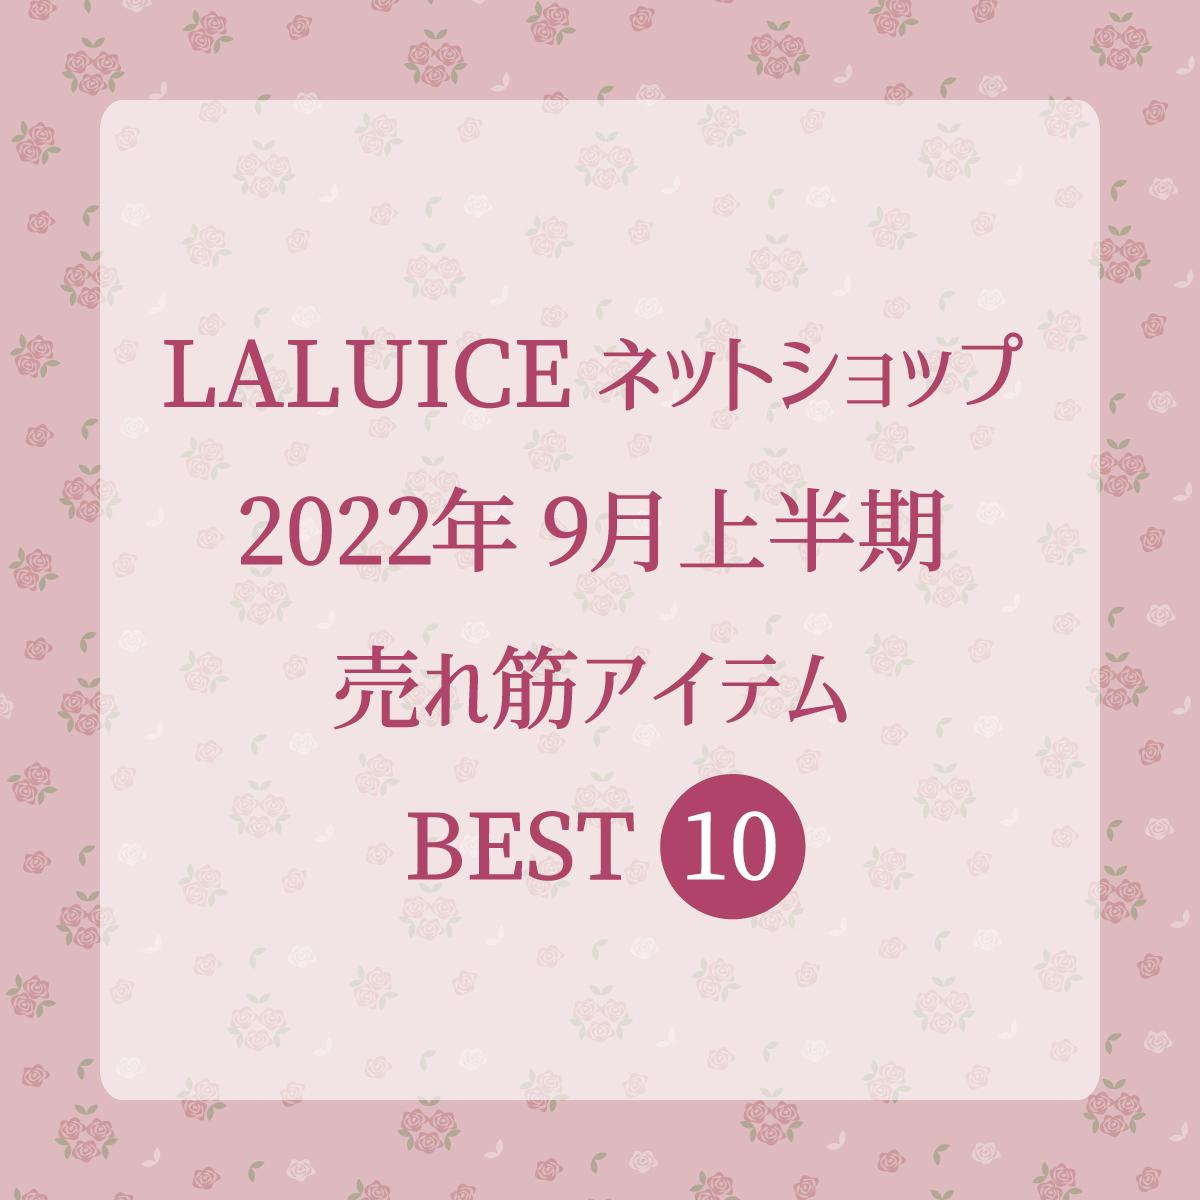 2022年9月上半期(9/1～9/15) LALUICEネットショップ売れ筋アイテム BEST10